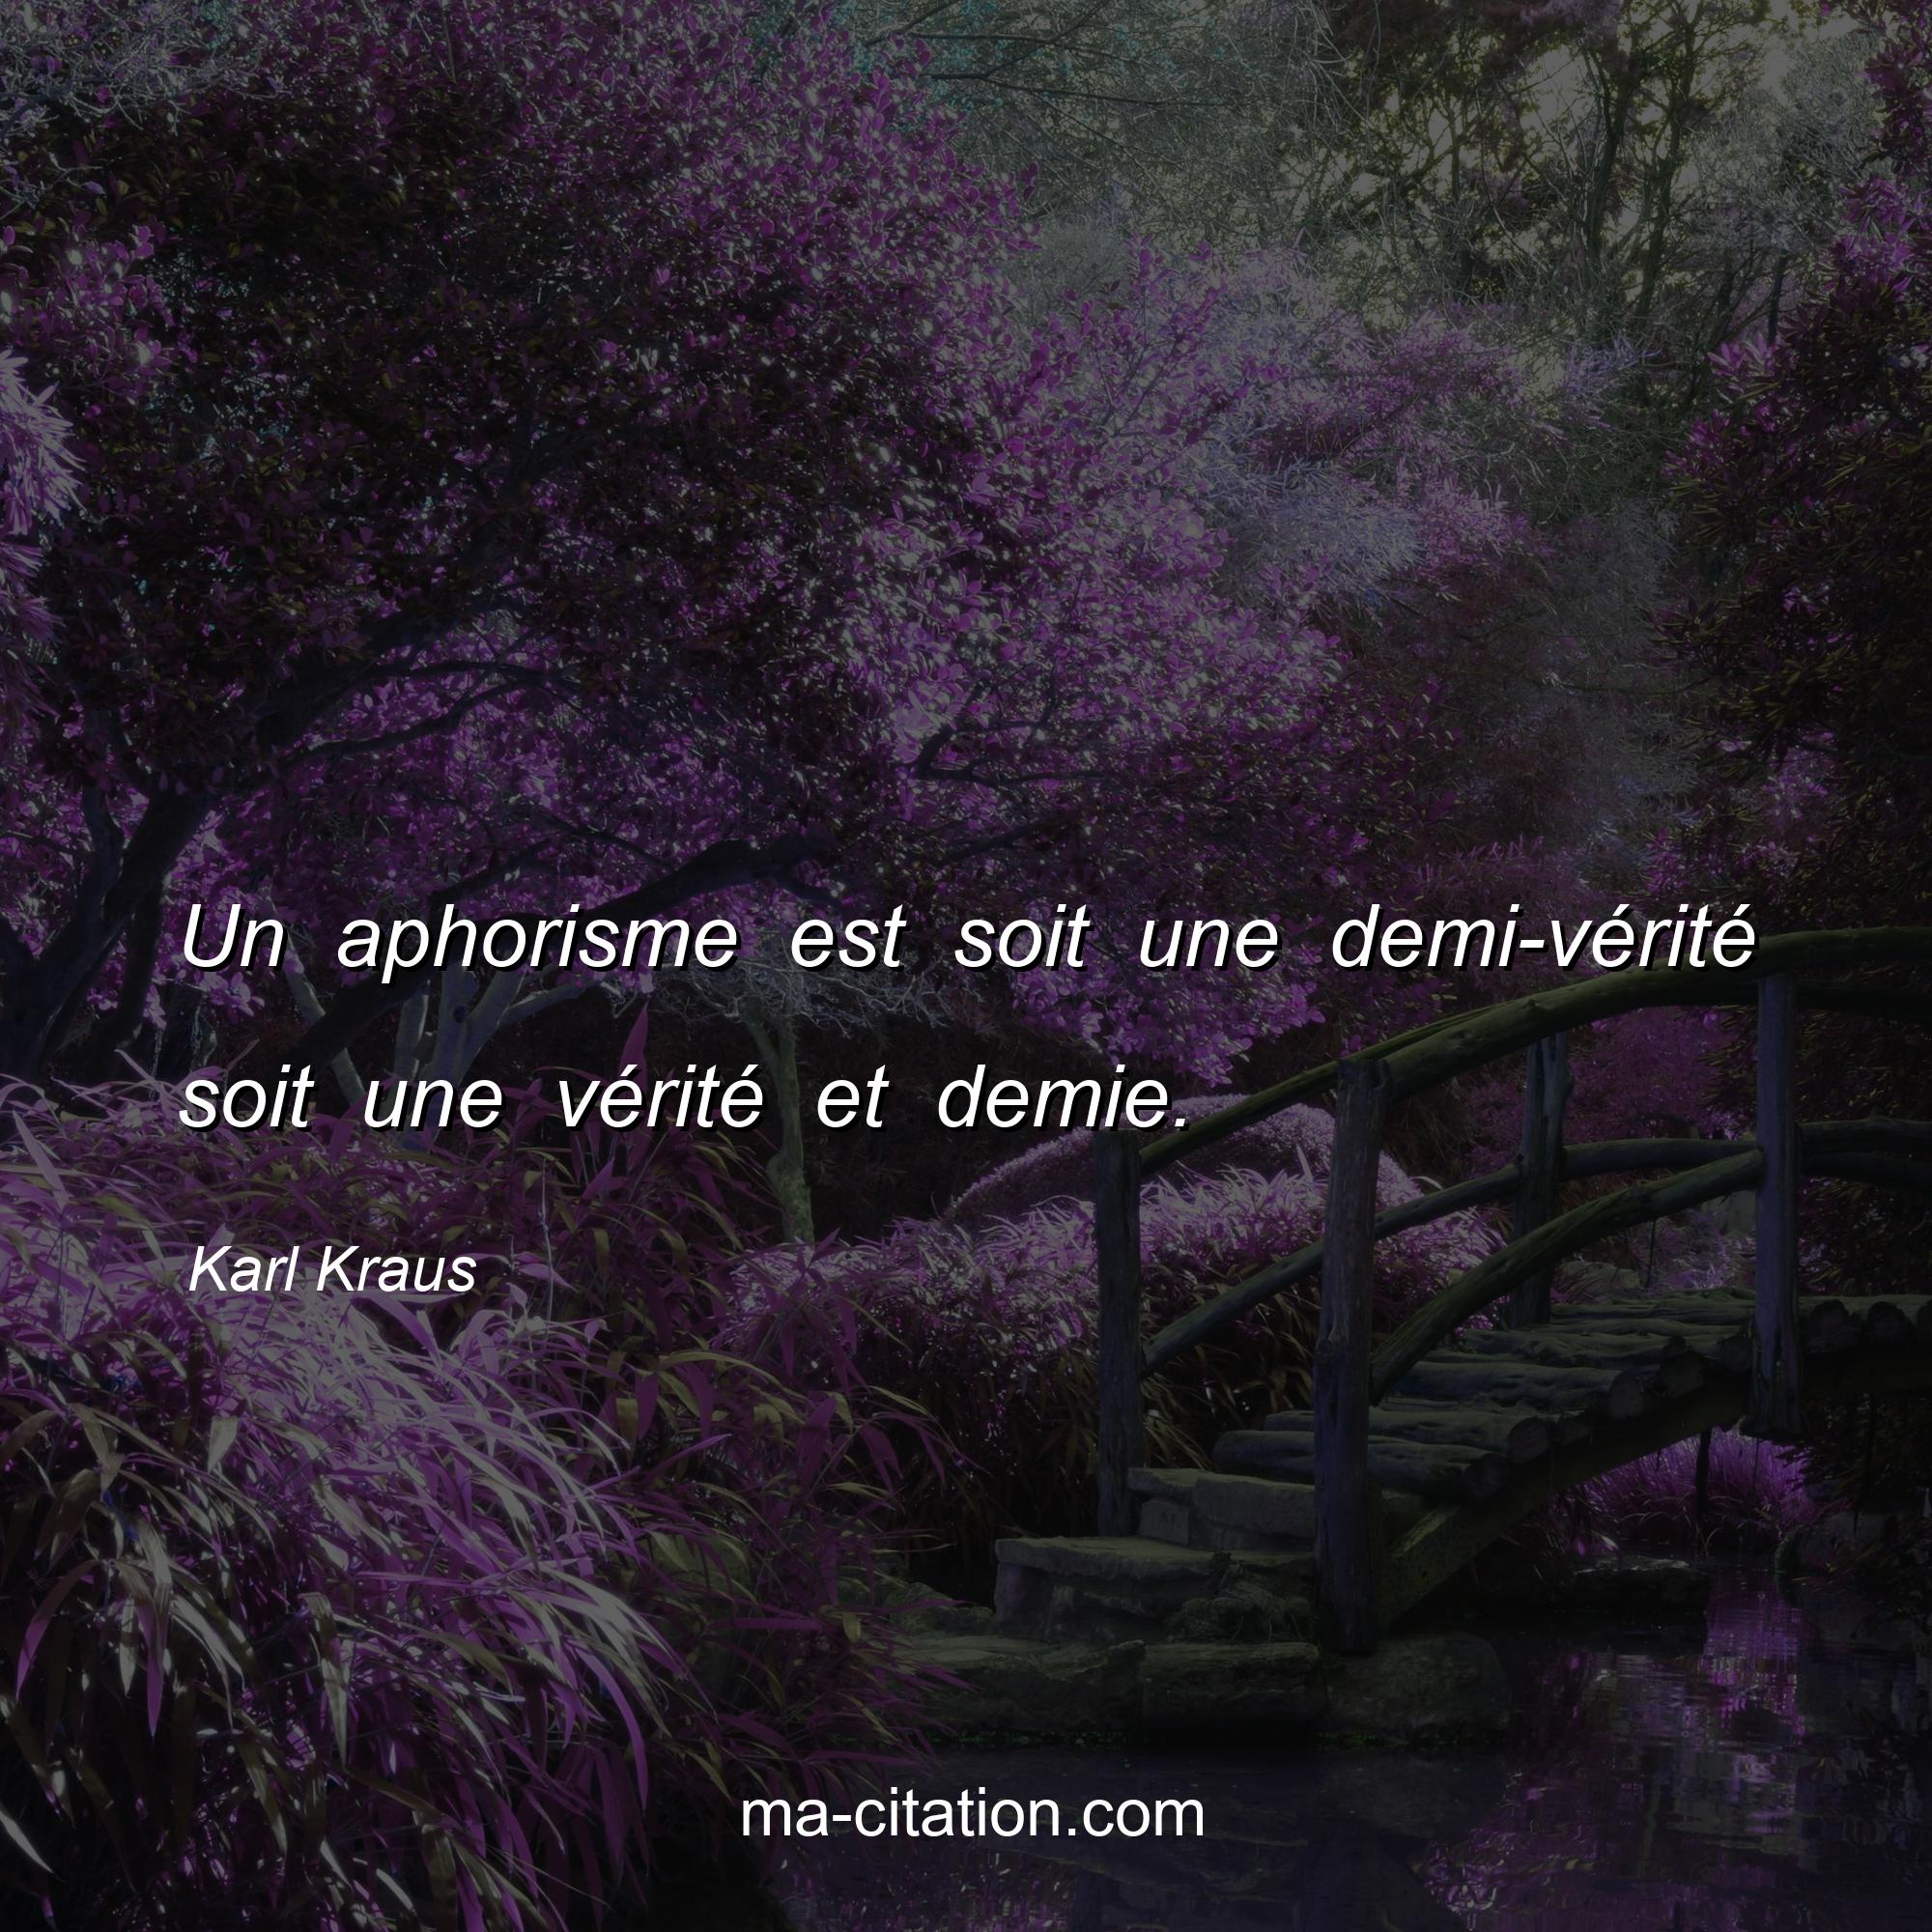 Karl Kraus : Un aphorisme est soit une demi-vérité soit une vérité et demie.